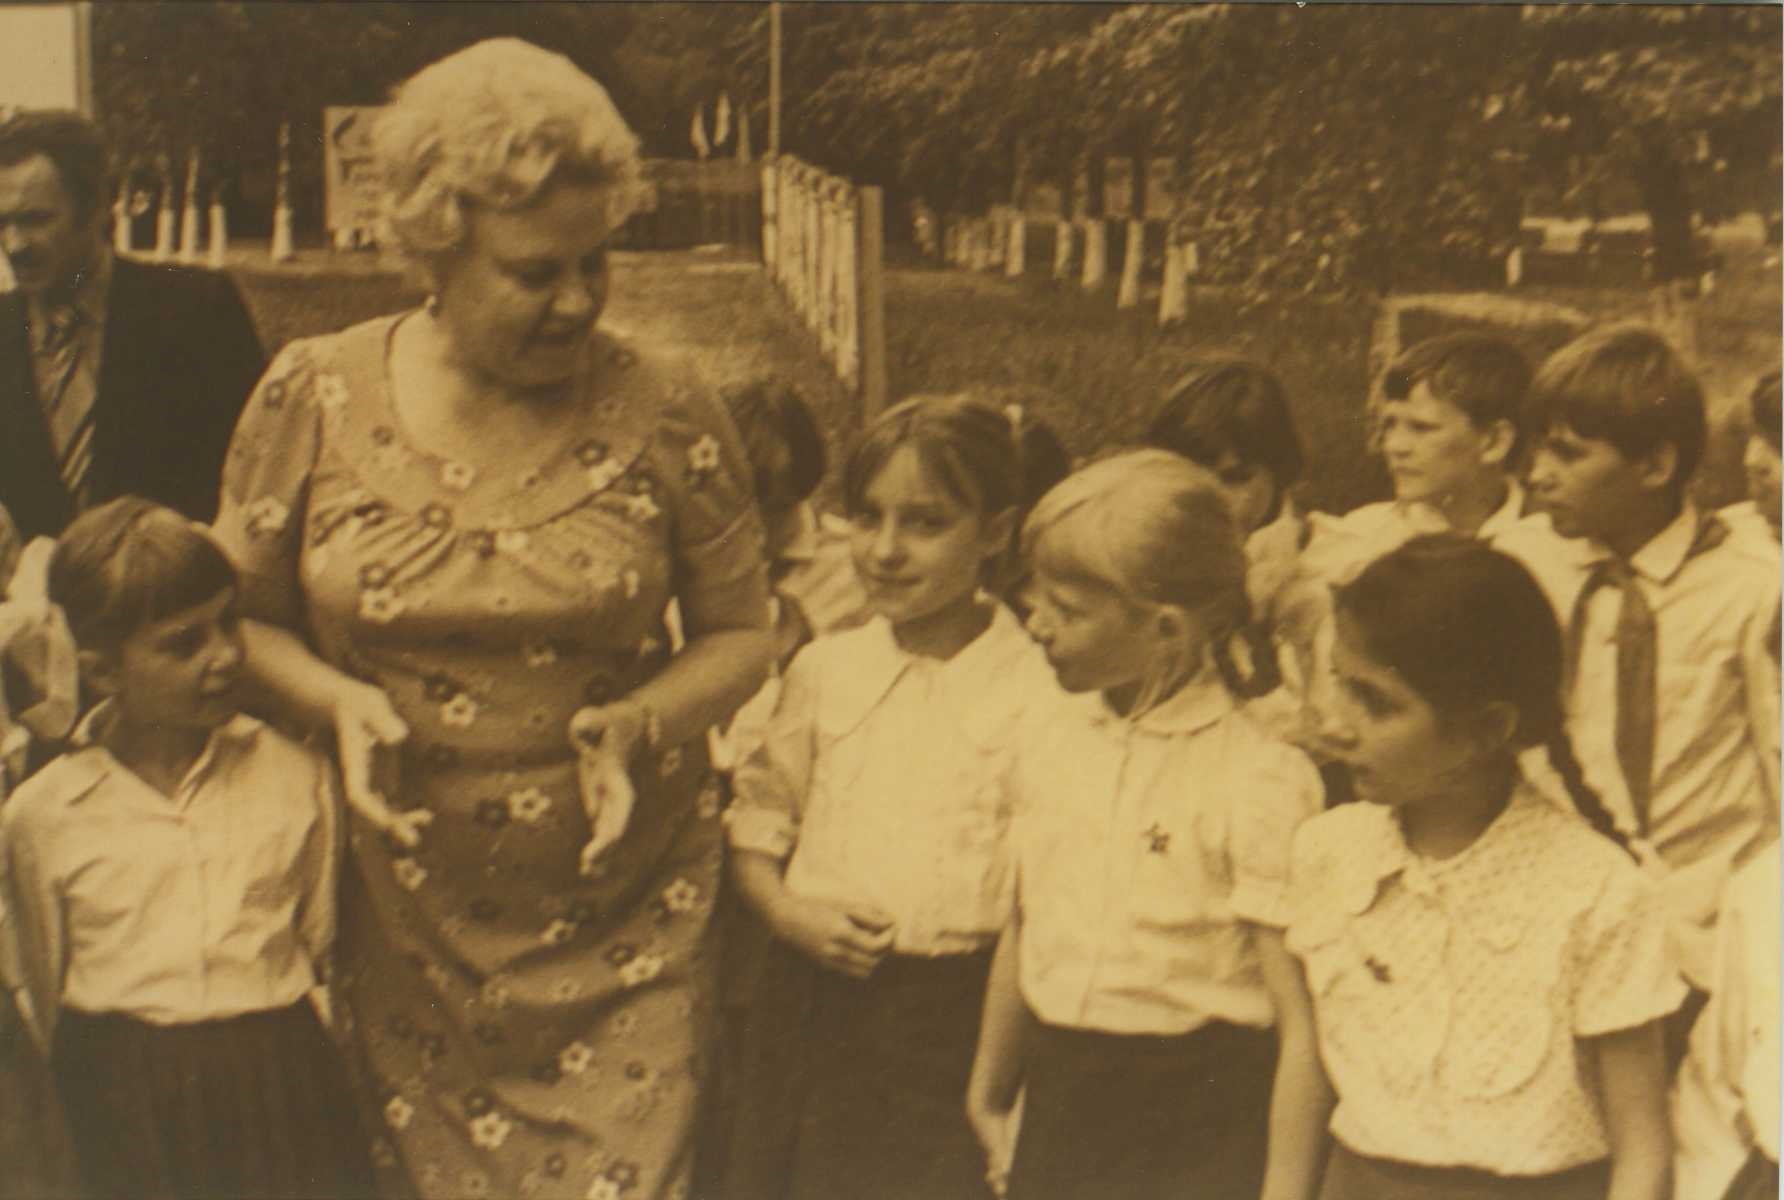 ГАТО. Ф. Р-2384. Оп. 1. Д. 37. Г.Р. Лагздынь со школьниками г. Ржева. 1979 г. (копия).